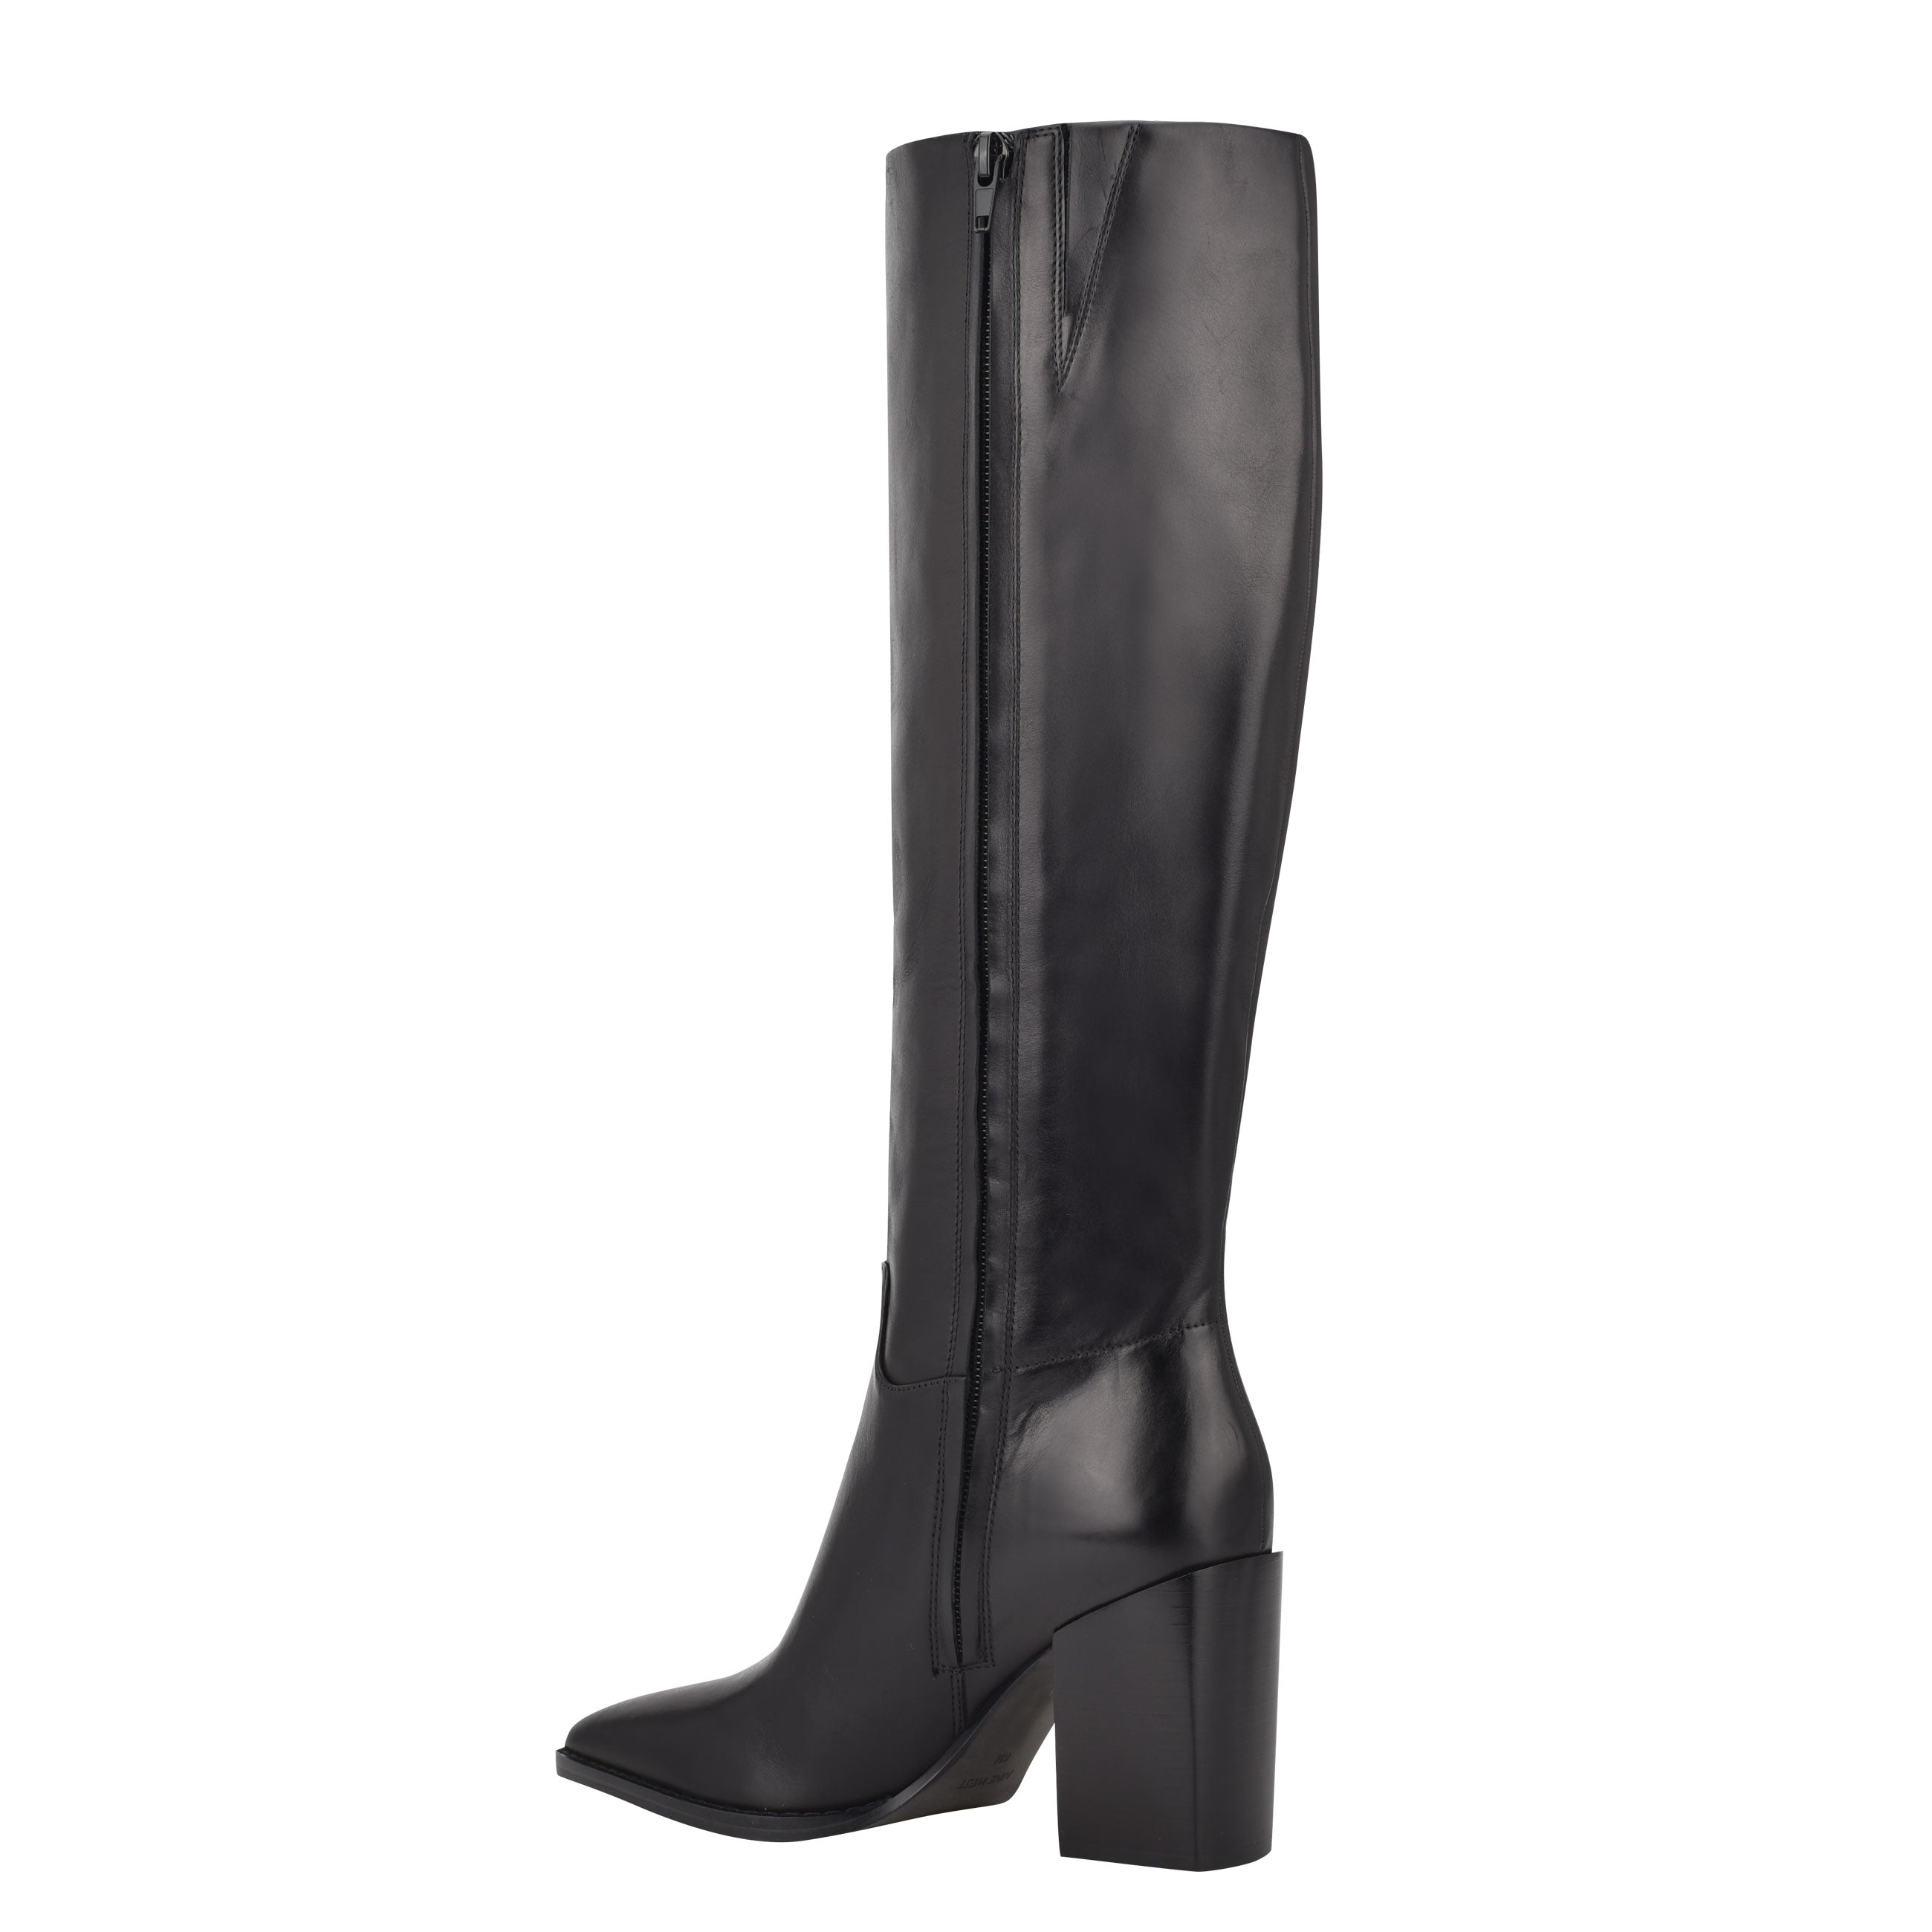 Shop Fall 2022 Trendy Boots, Booties: Knee-High Black, Block Heel